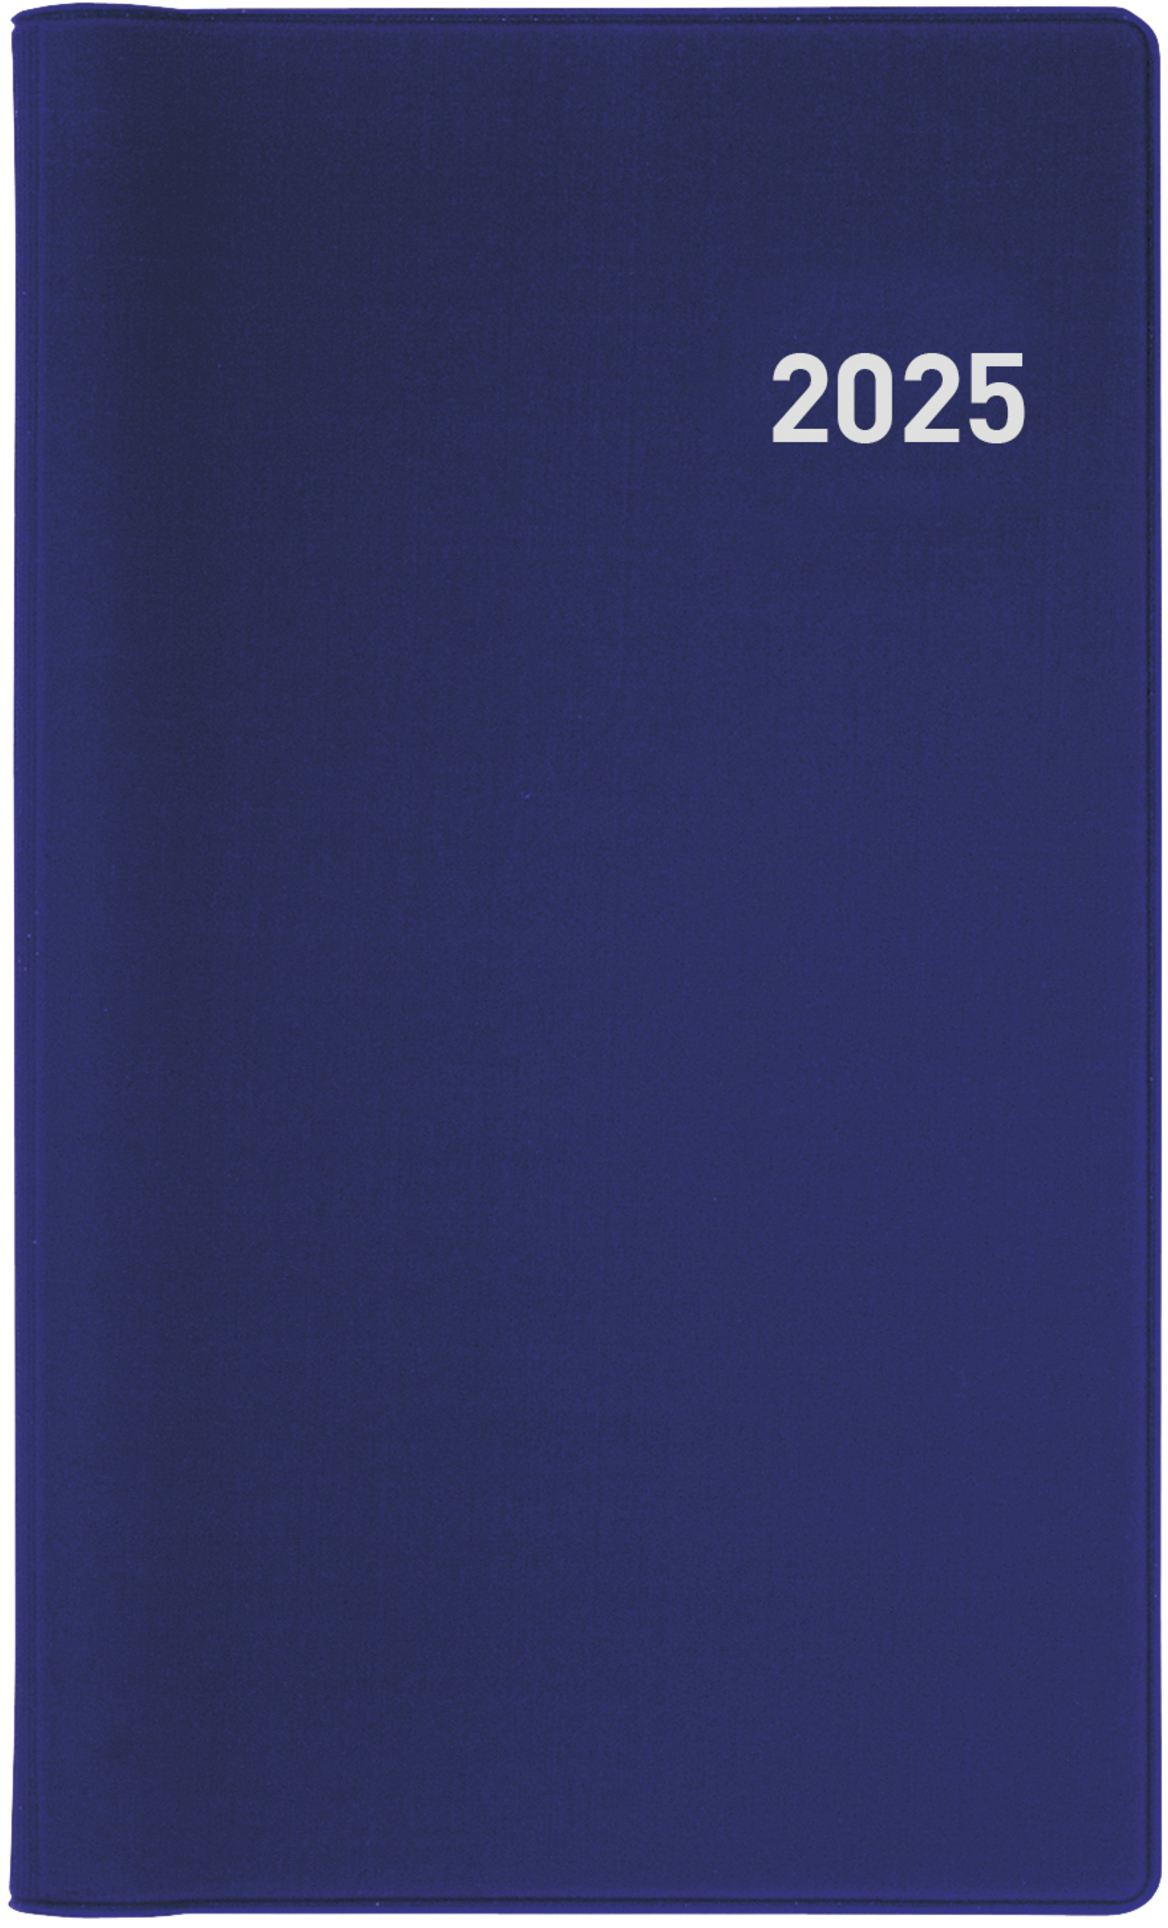 BIELLA Agenda Bruxelles Wire-O 2025 858773050025 1S/2P bleu ML 8.5x15.3cm